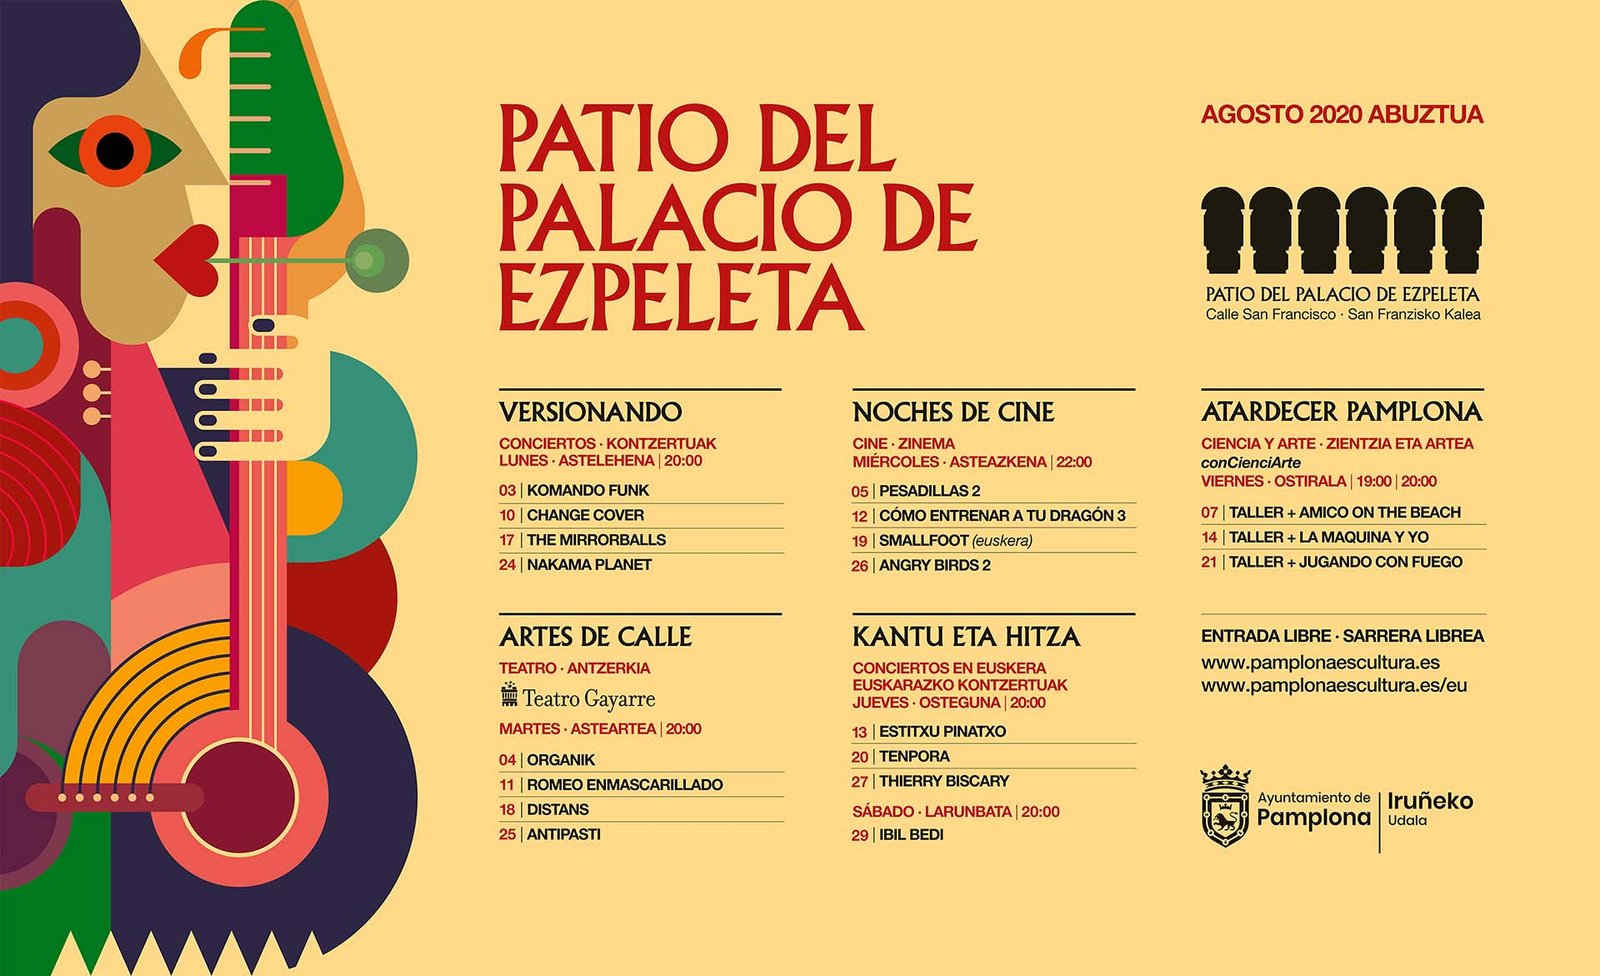 El Festival de las Murallas y la programación de actividades en el patio del Palacio de Ezpeleta proponen más de cuarenta actividades culturales gratuitas al aire libre durante el mes de agosto